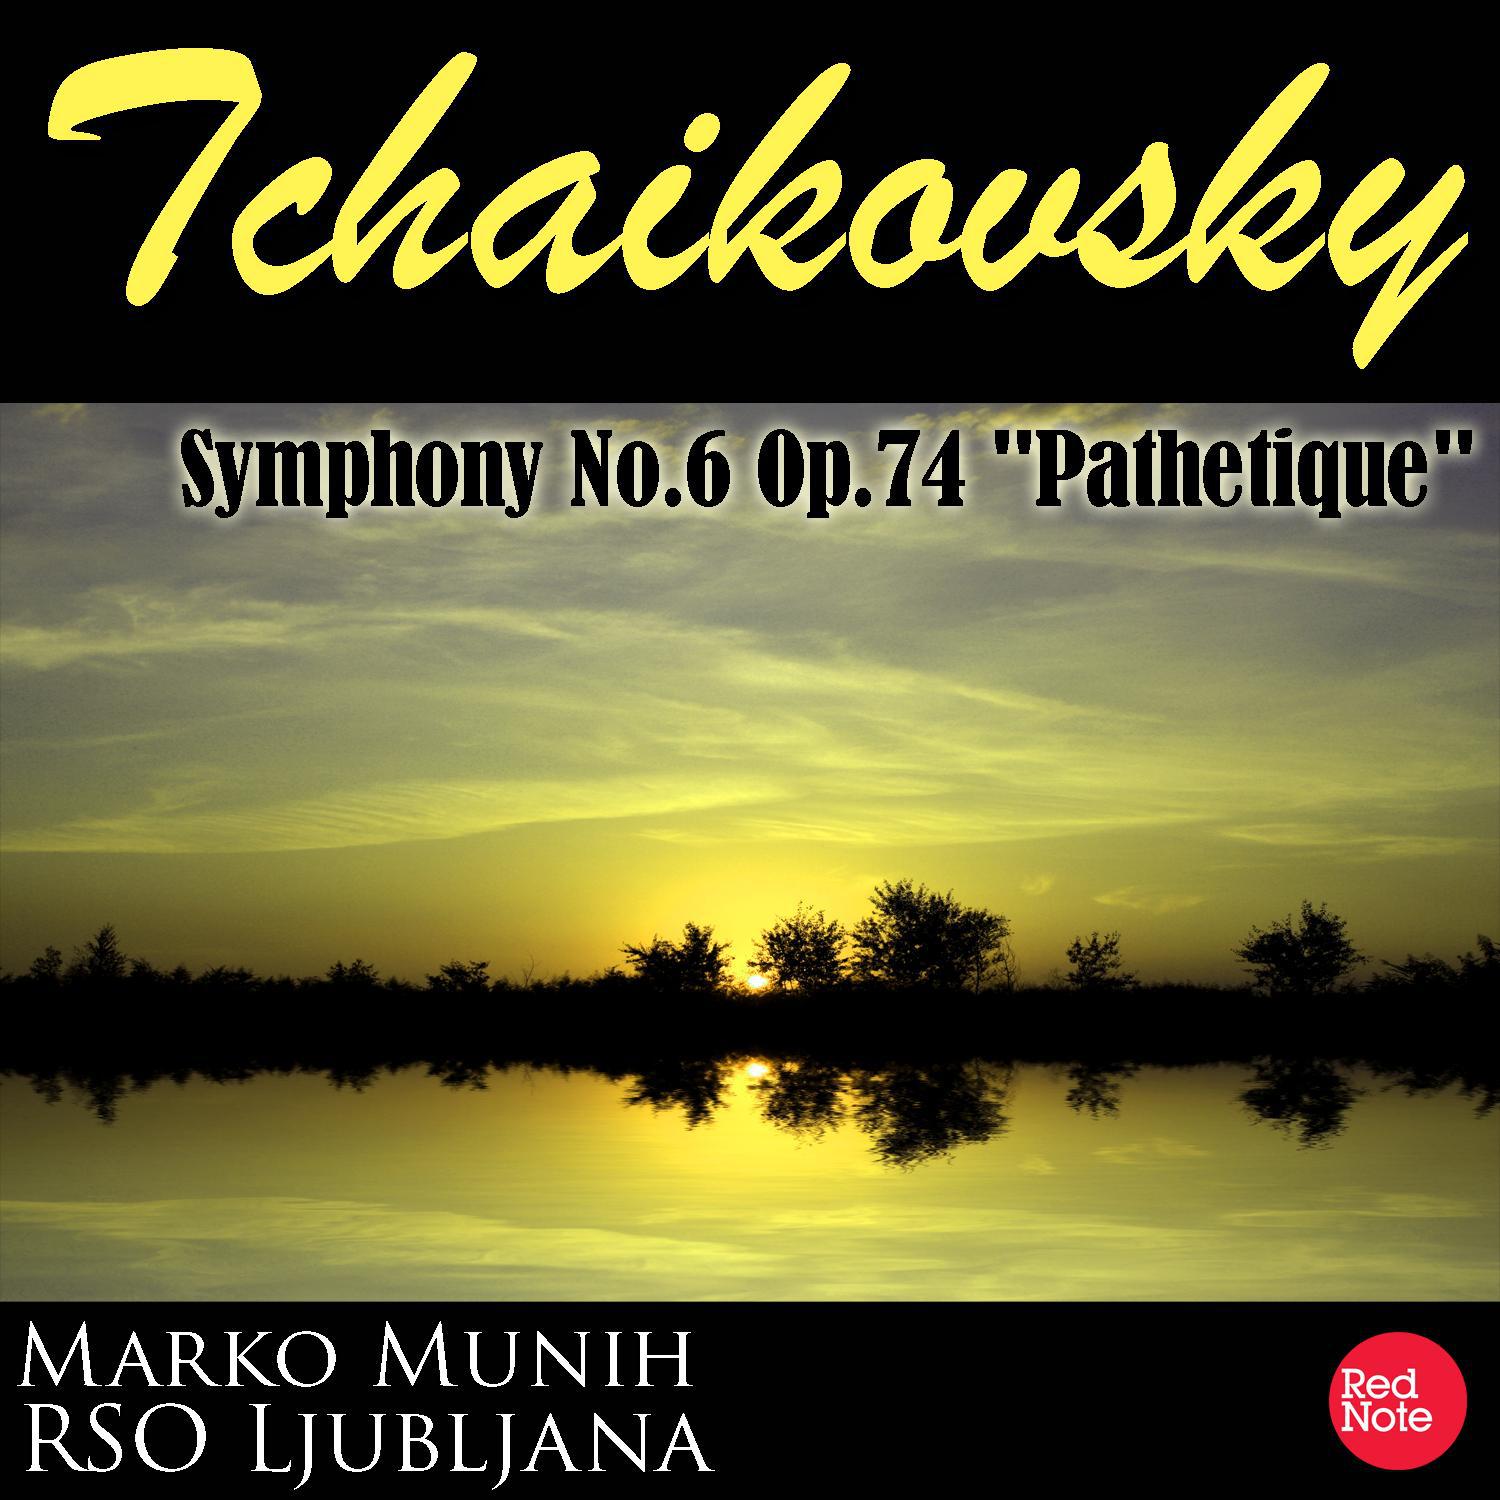 Tchaikovsky: Symphony No.6 Op.74 "Pathetique"